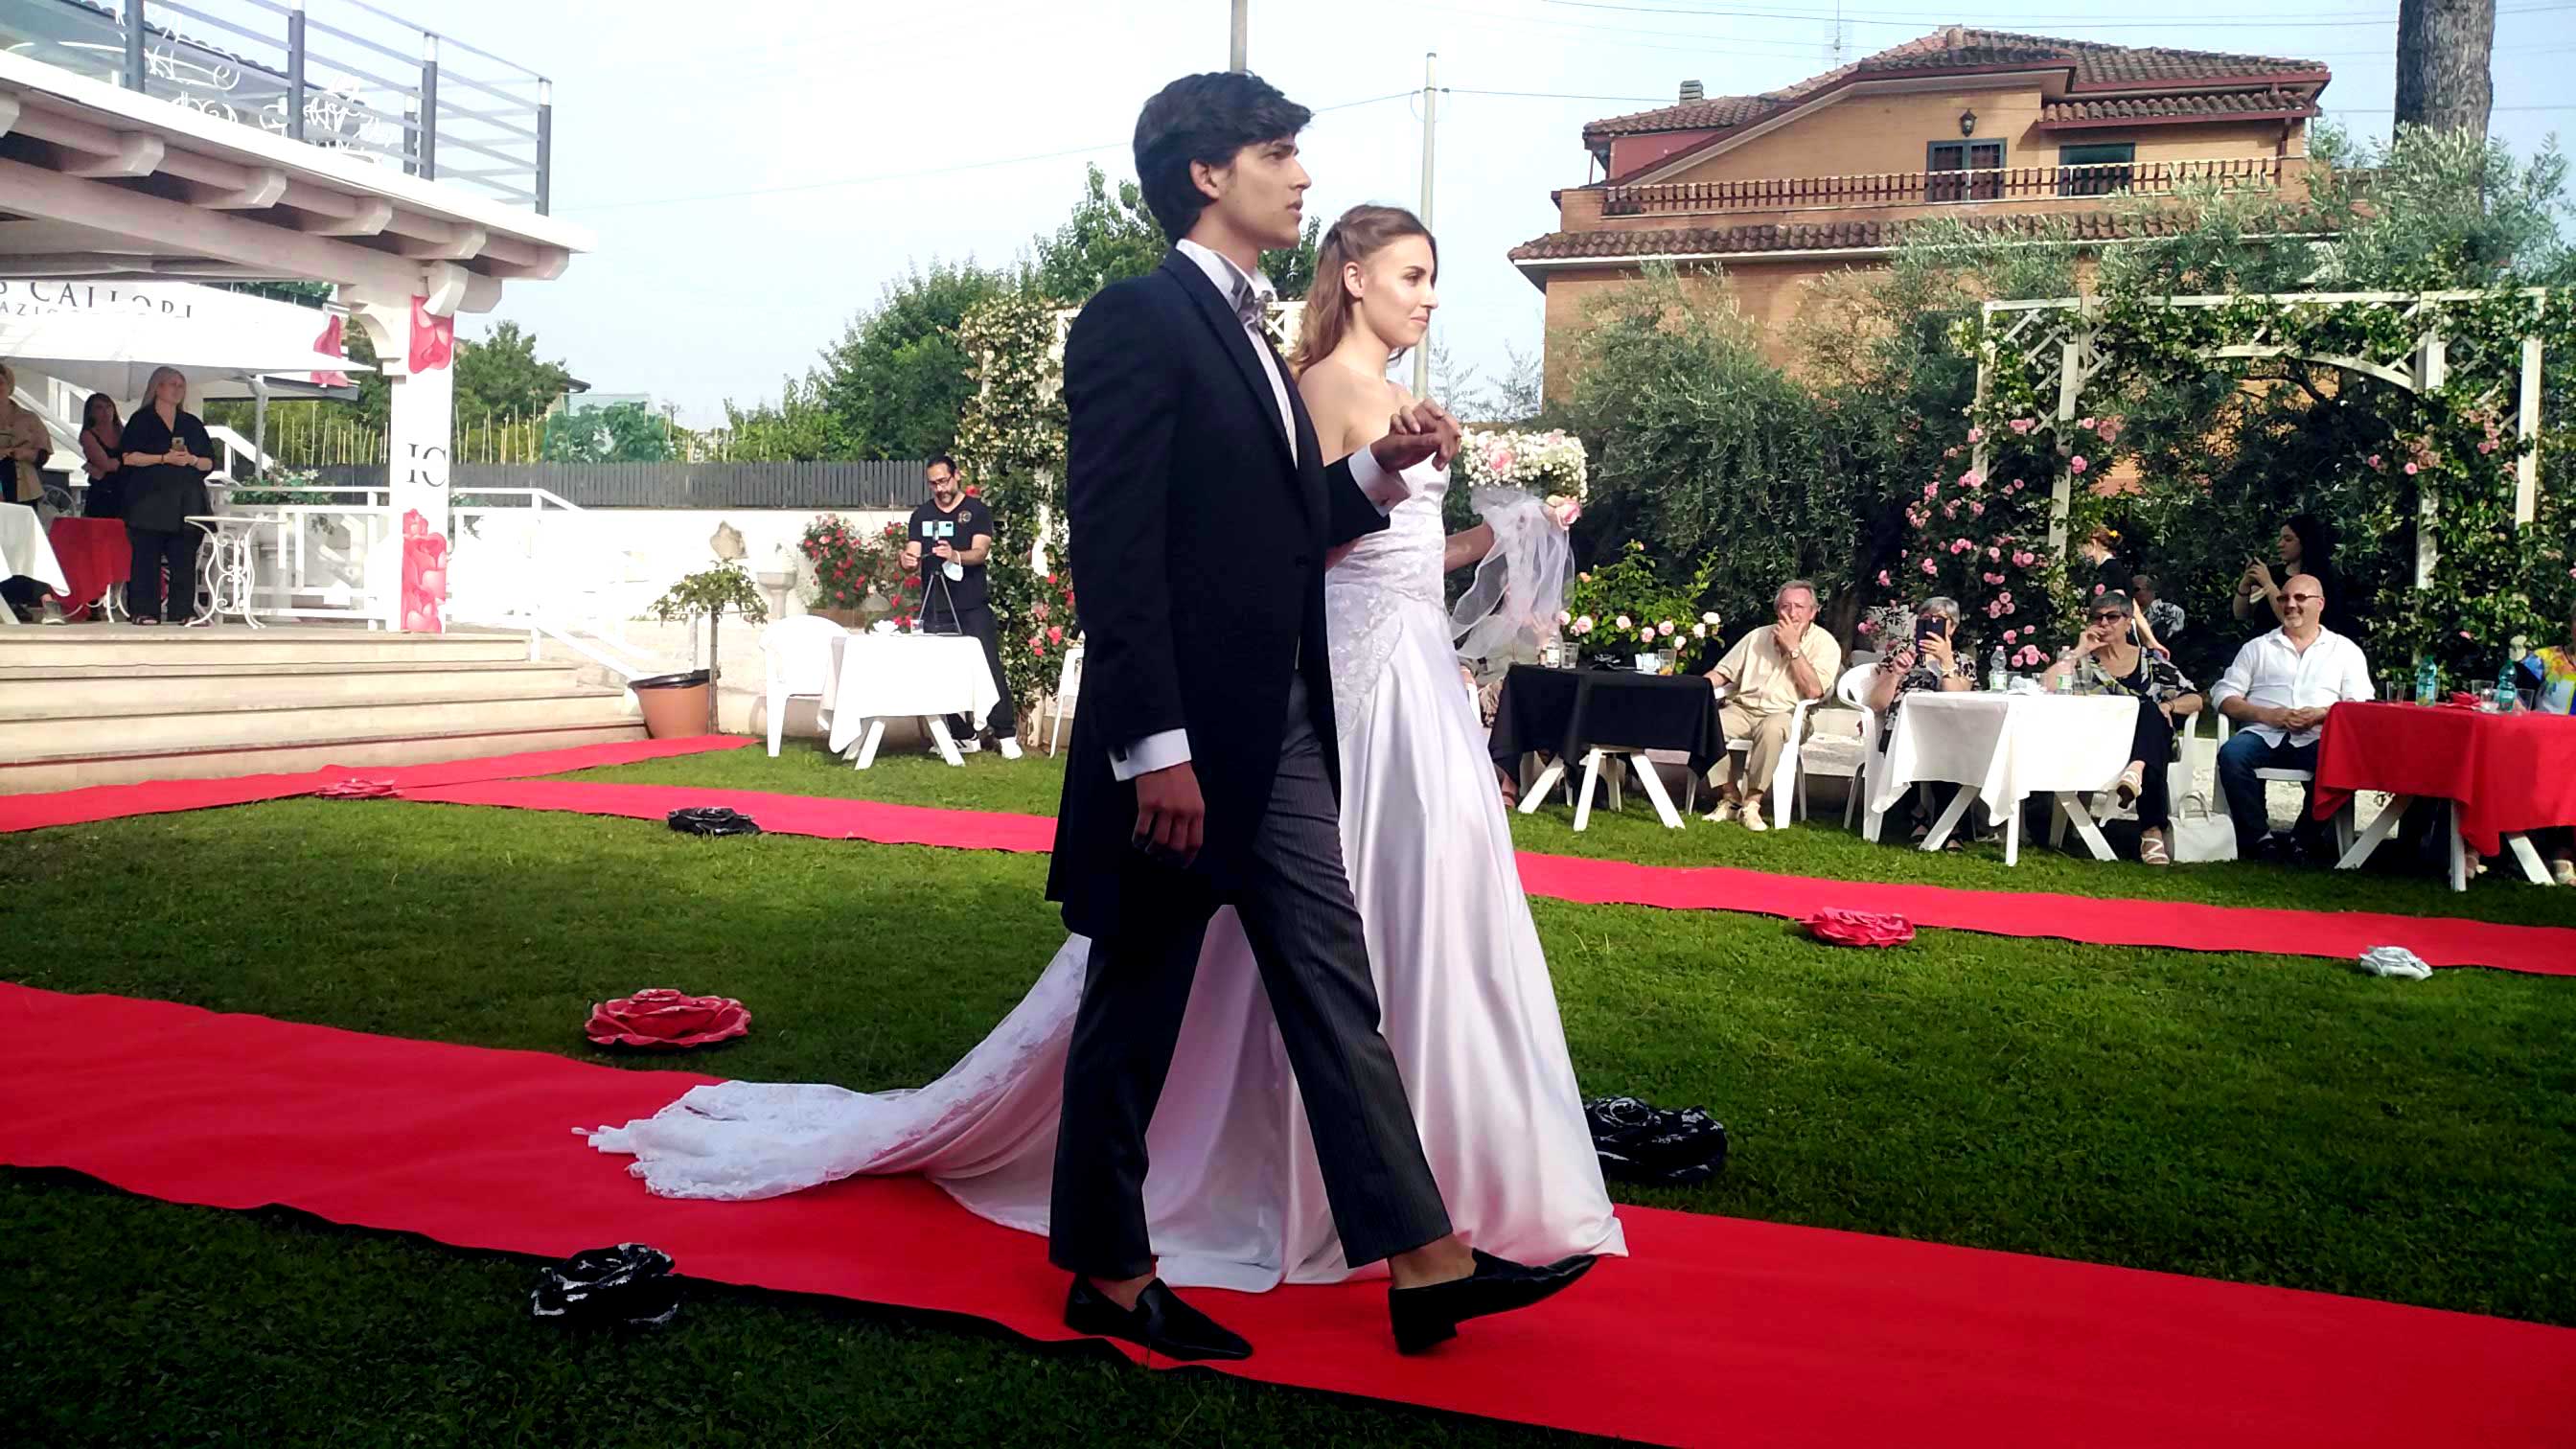 Abiti sposo : Eleonora Giamberduca presenta un abito da matrimonio per uomo. Location villa Aurora - Frascati. Vestiti su misura Elins moda a Roma foto7